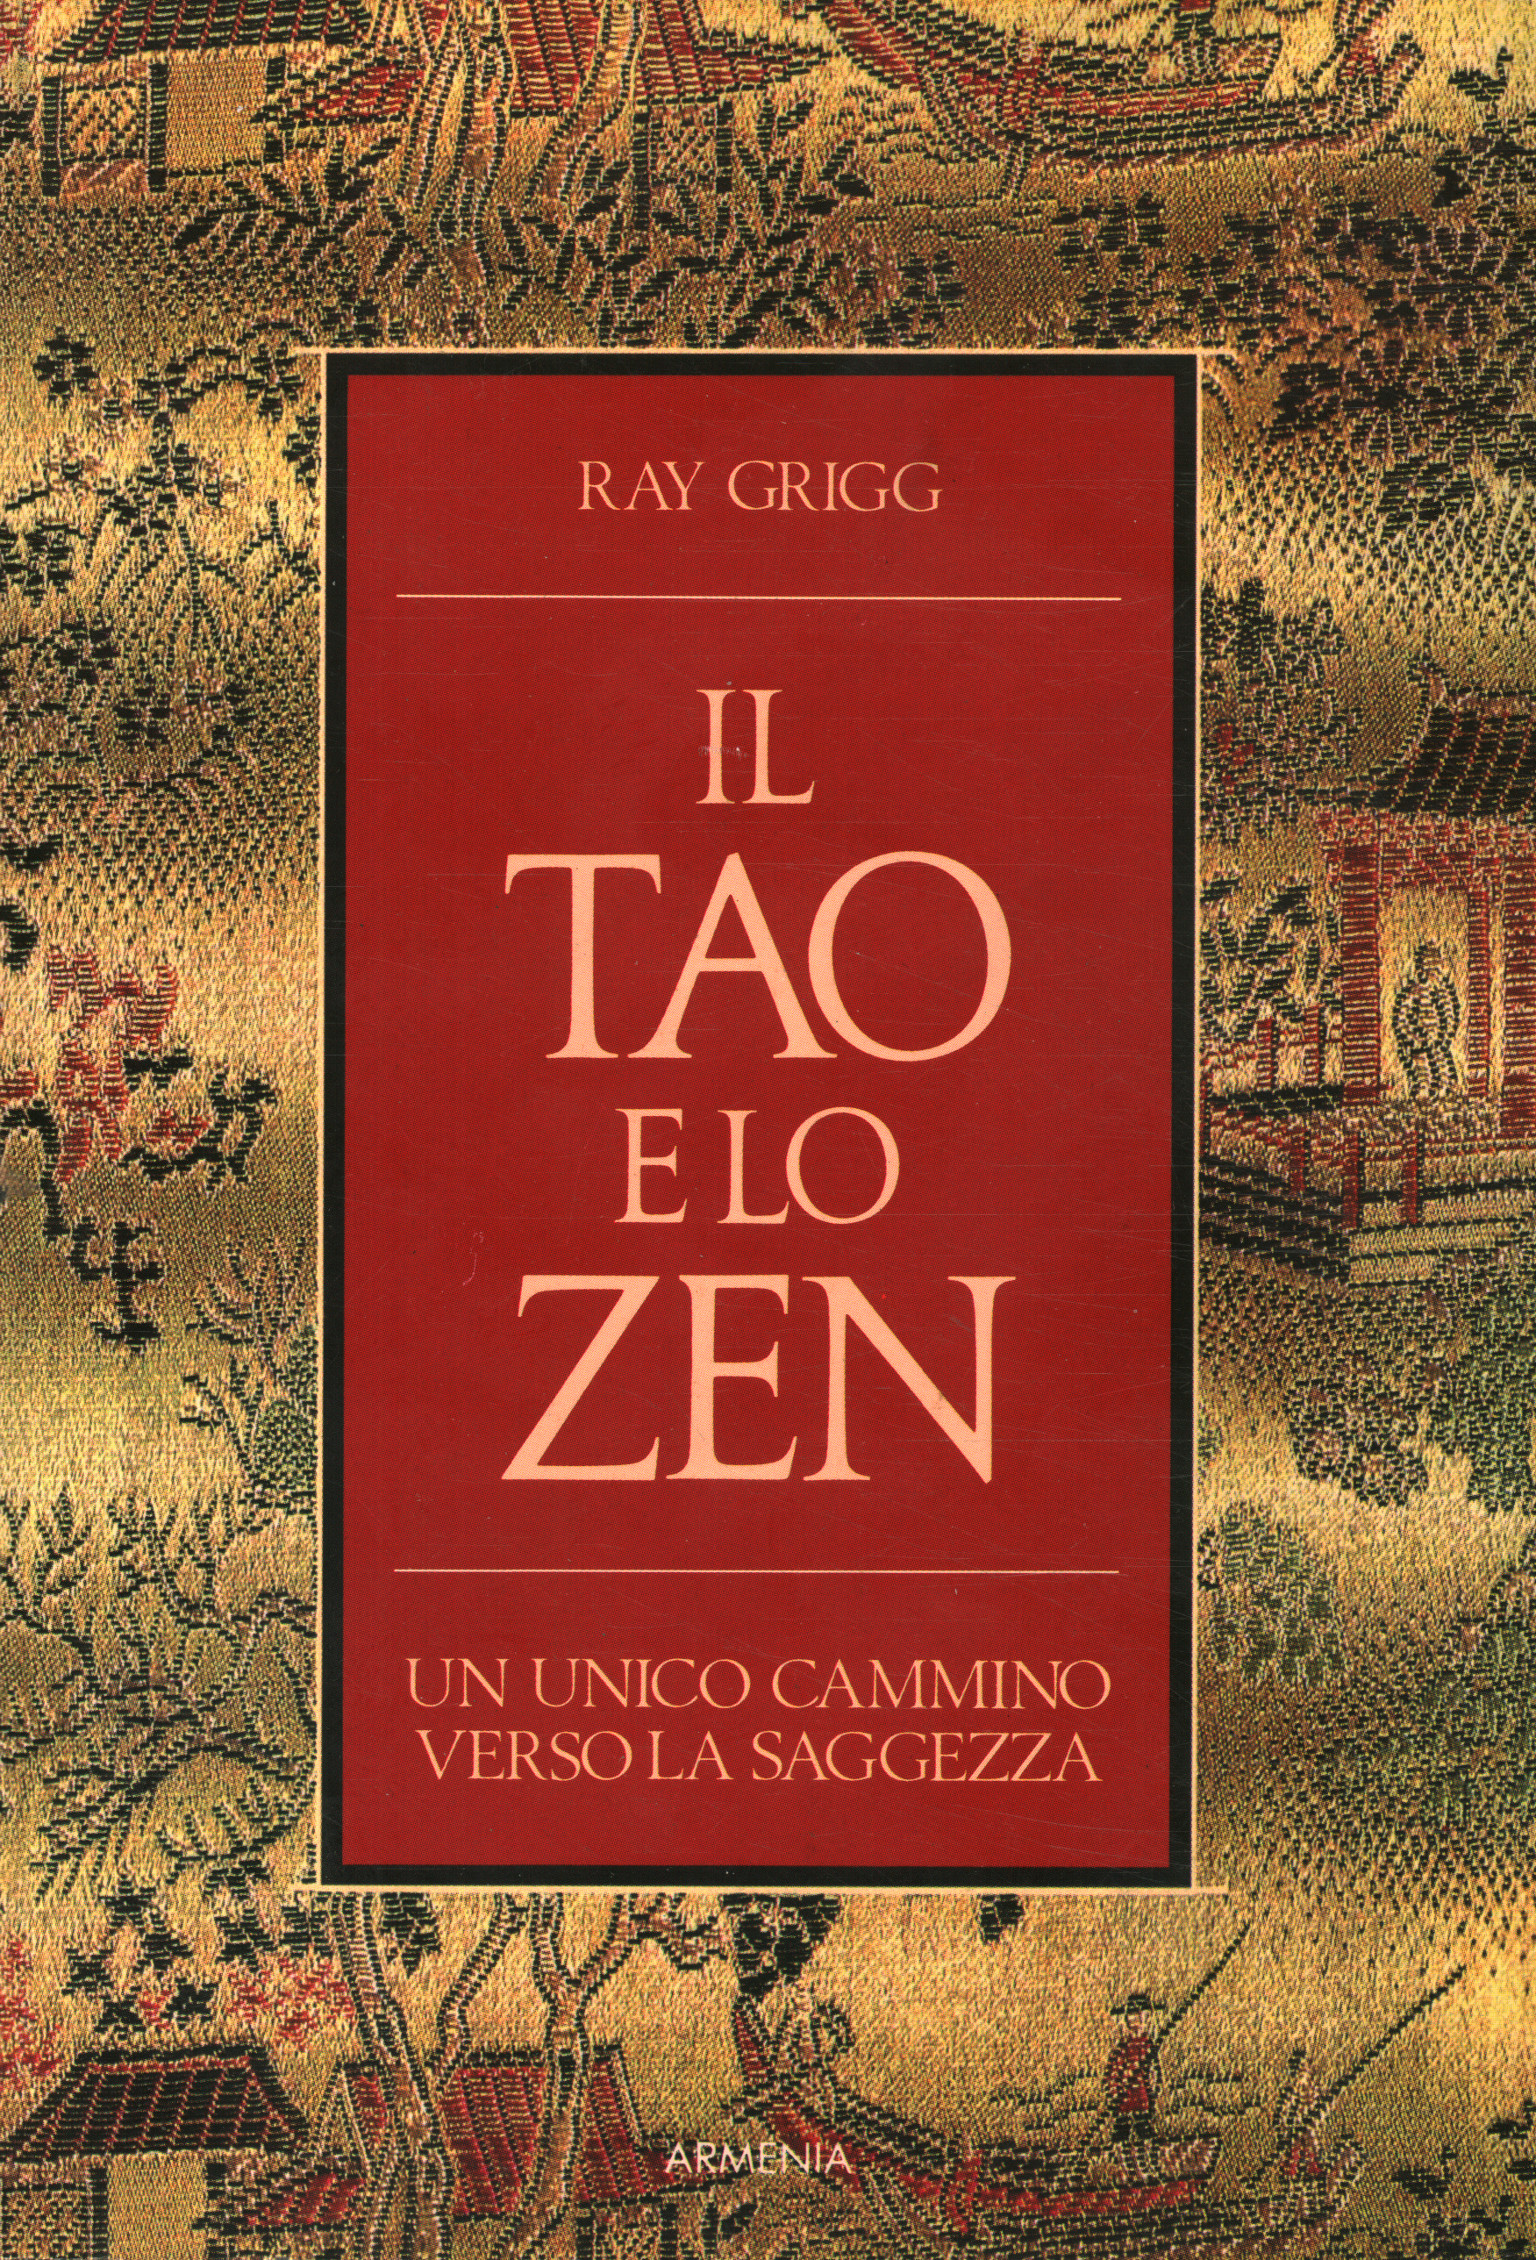 Le Tao et le Zen